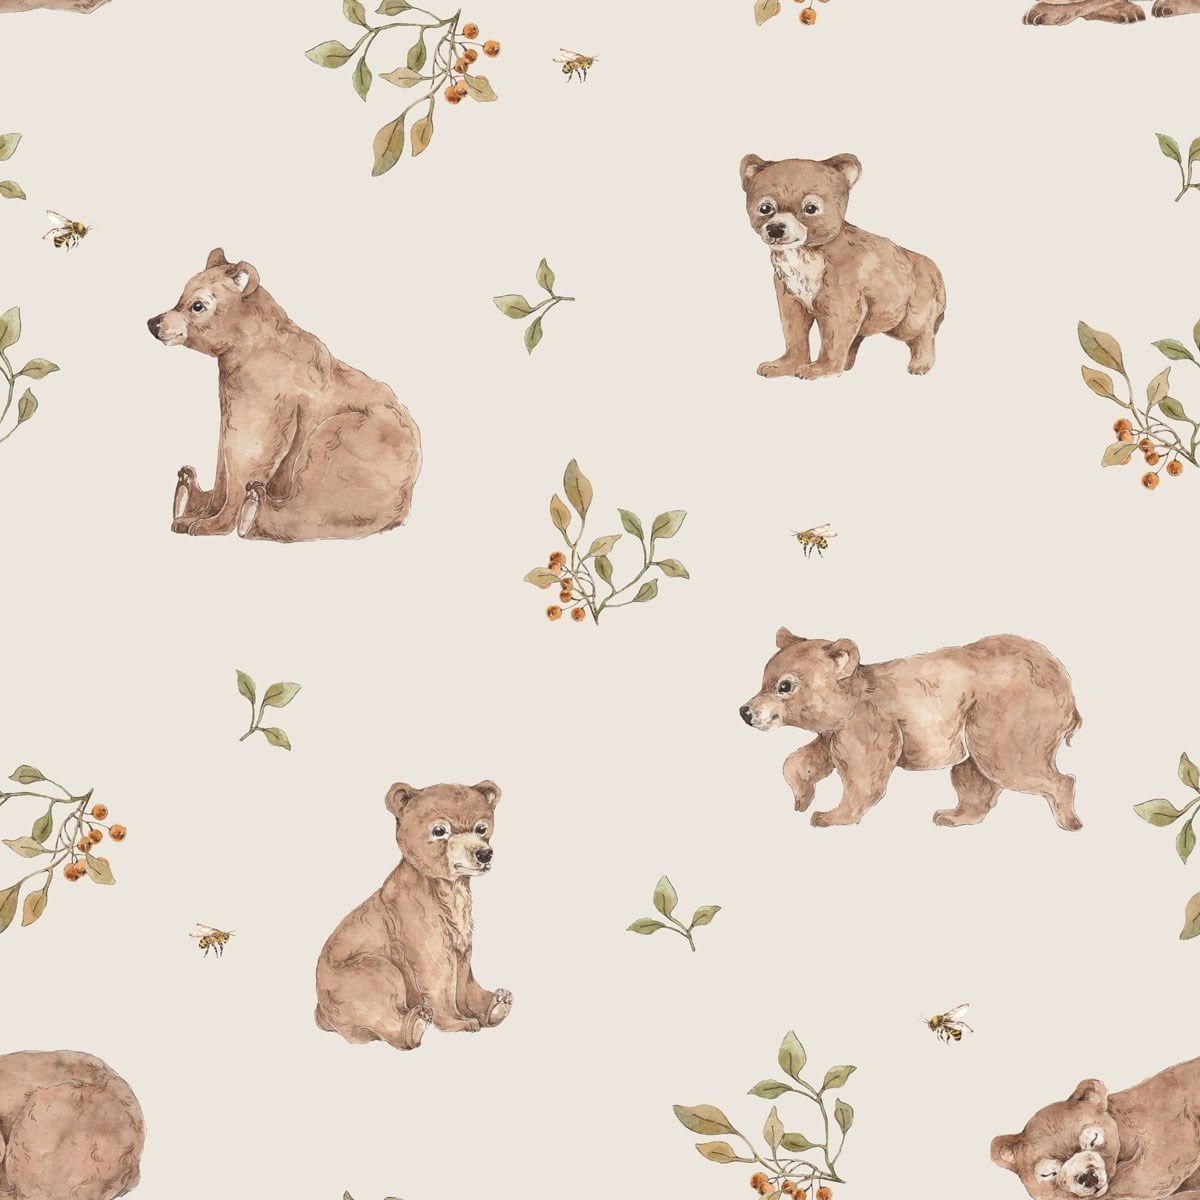 Little Bears Wallpaper.com Wallstickers And Wallpaper Online Store